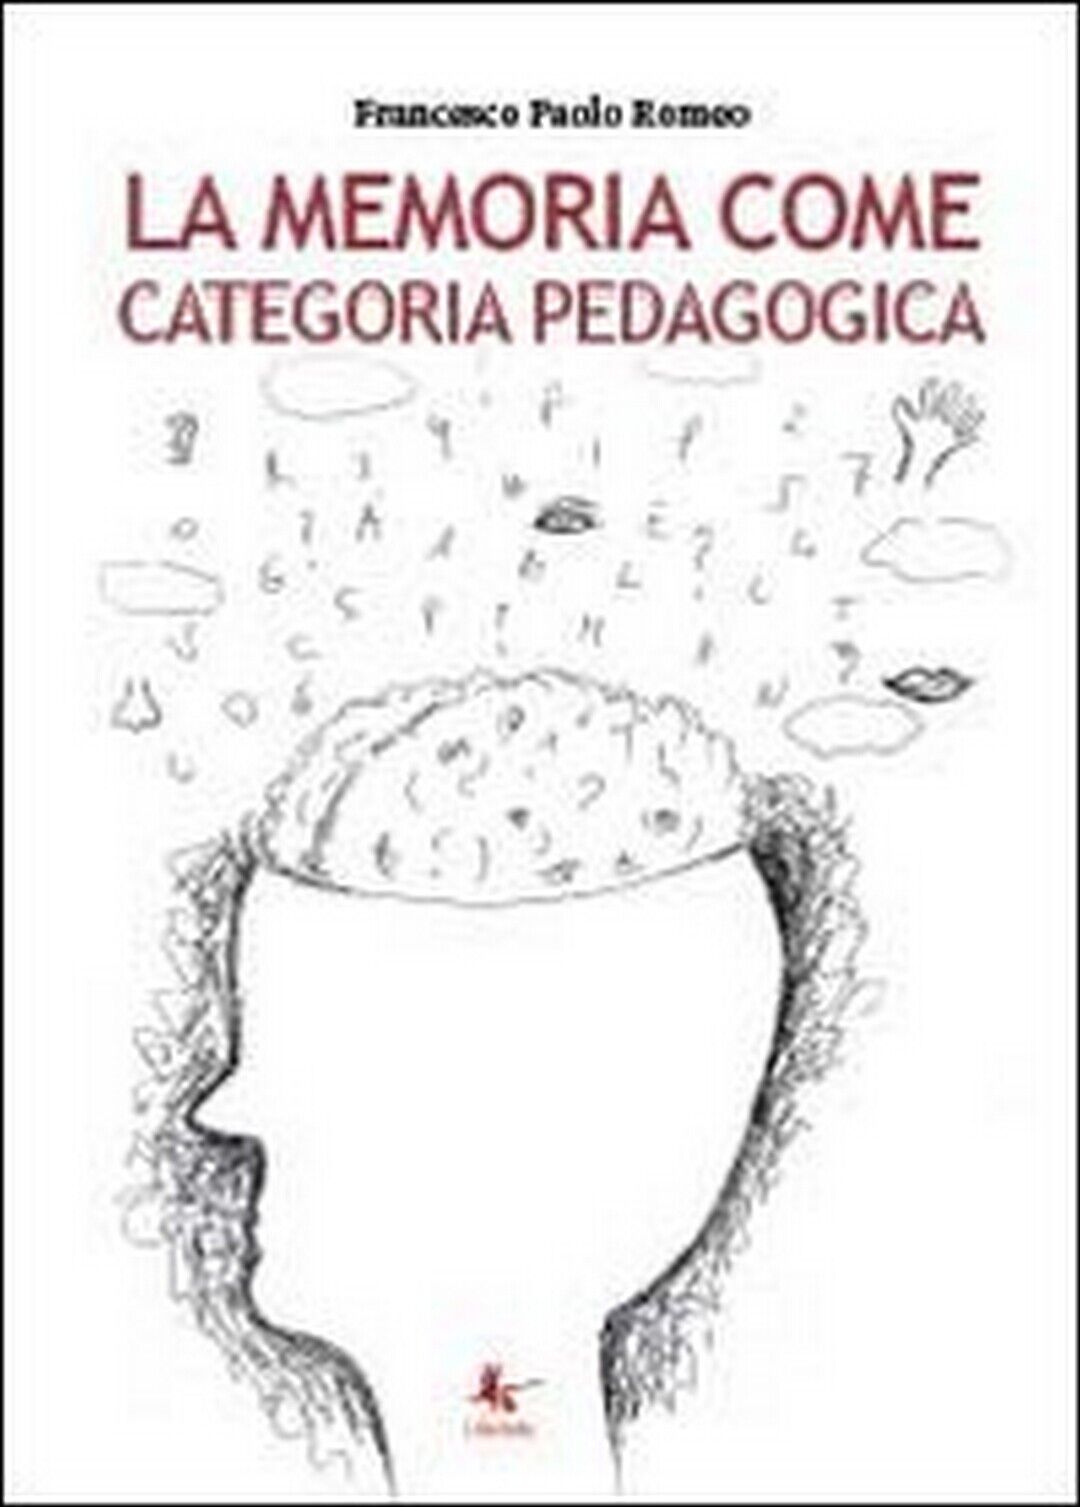 La memoria come categoria pedagogica  di Francesco Paolo Romeo,  2014,  Libell